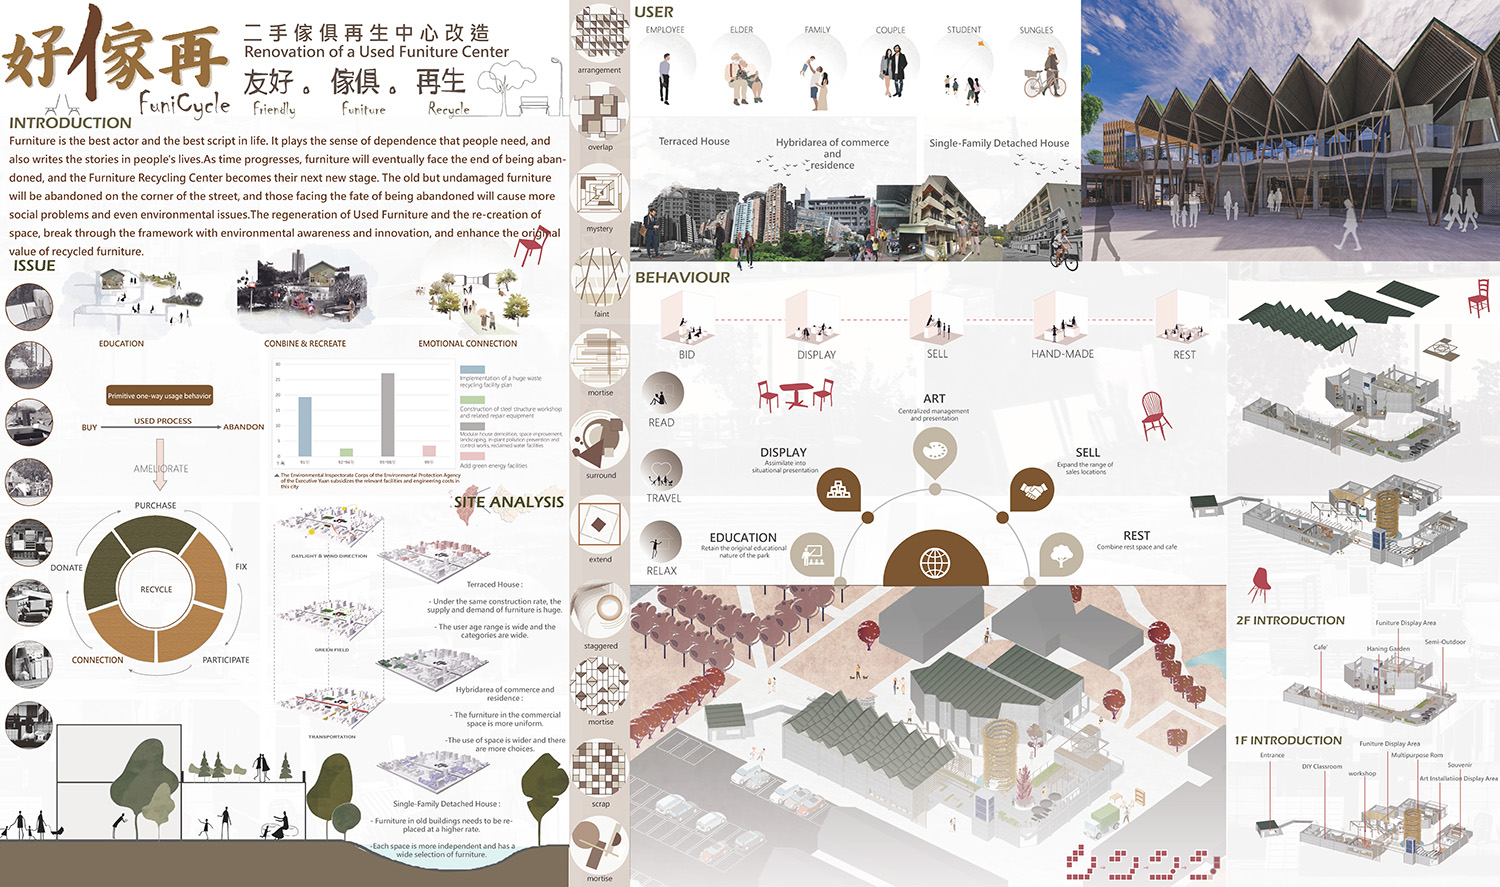 Wei-Xiang Zeng and Yun-Yu Liao won the "Interior Design of Exhibition" award